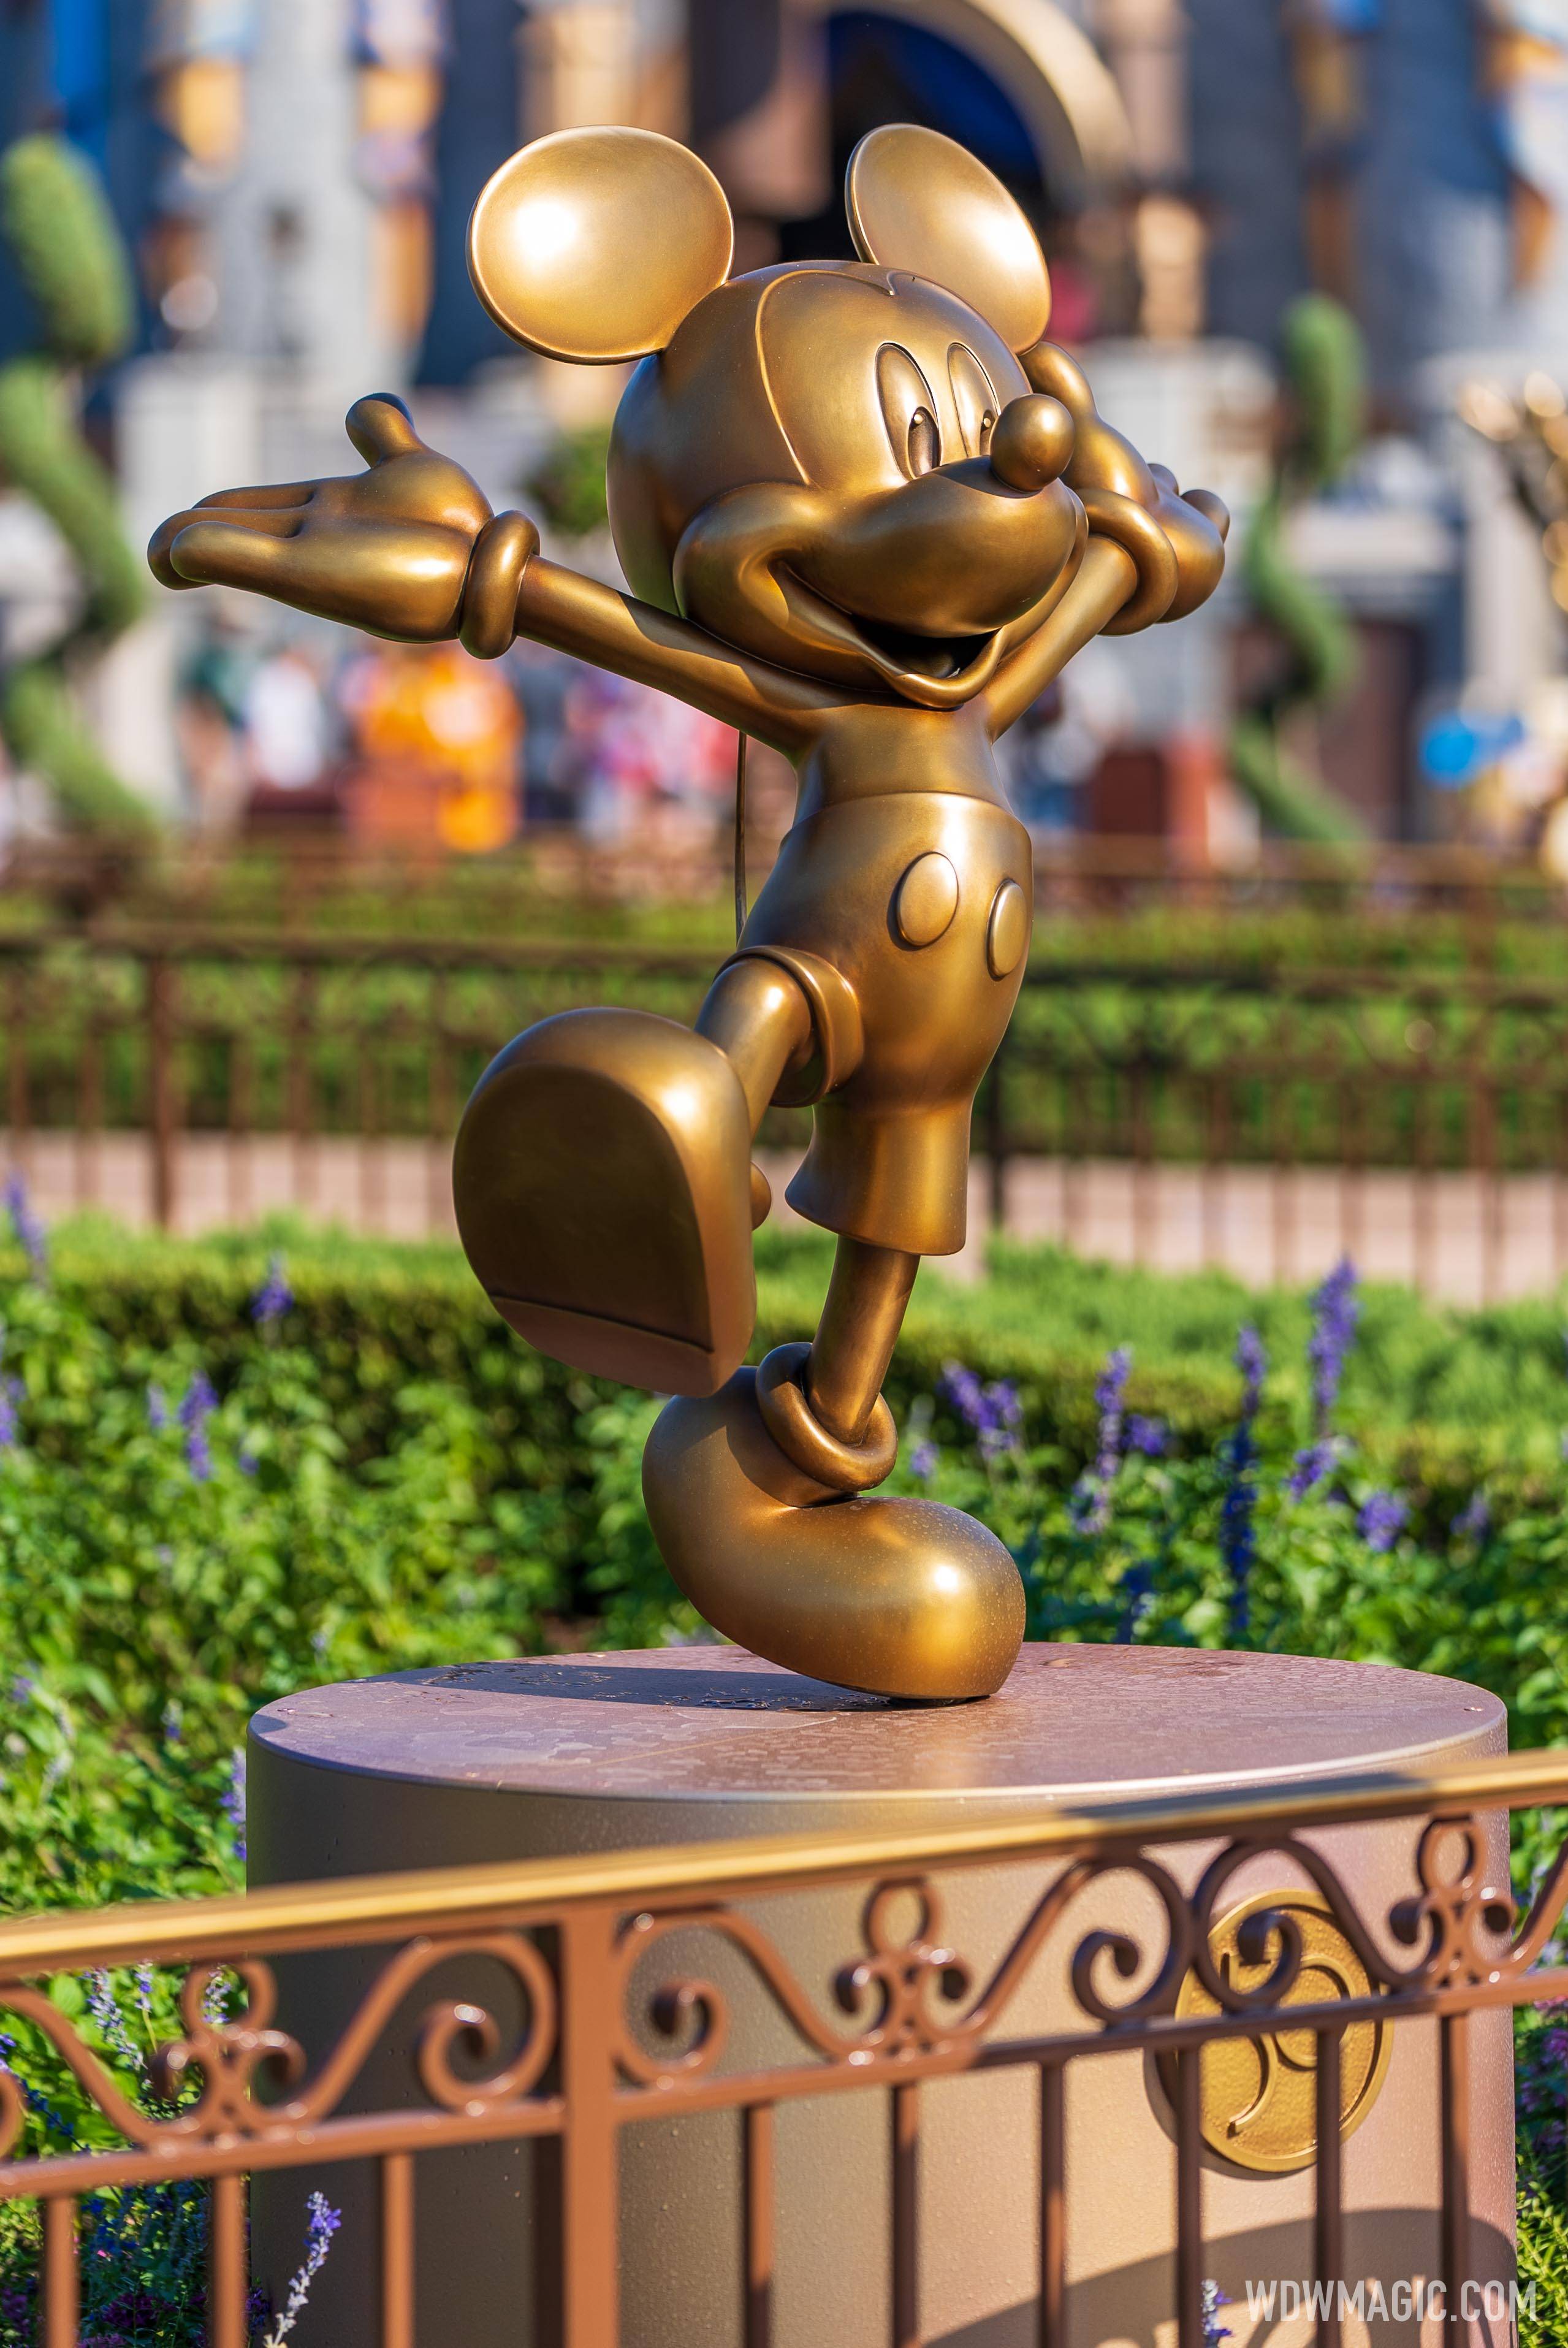 Disney Fab 50 golden character statues at Magic Kingdom